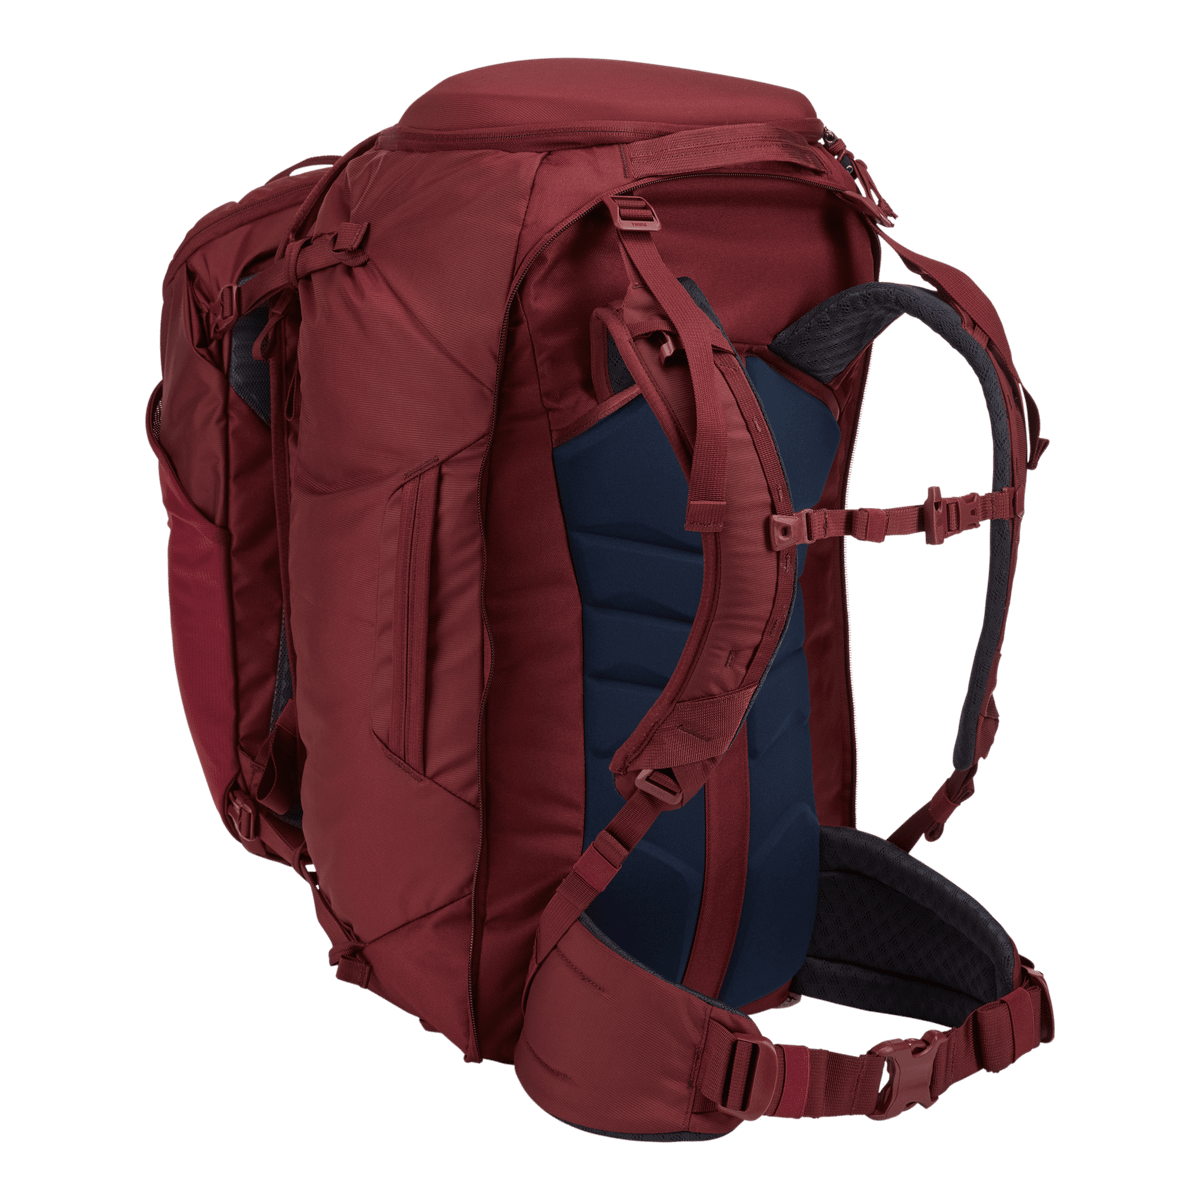 Thule Landmark 70L women's backpacking pack dark bordeaux red